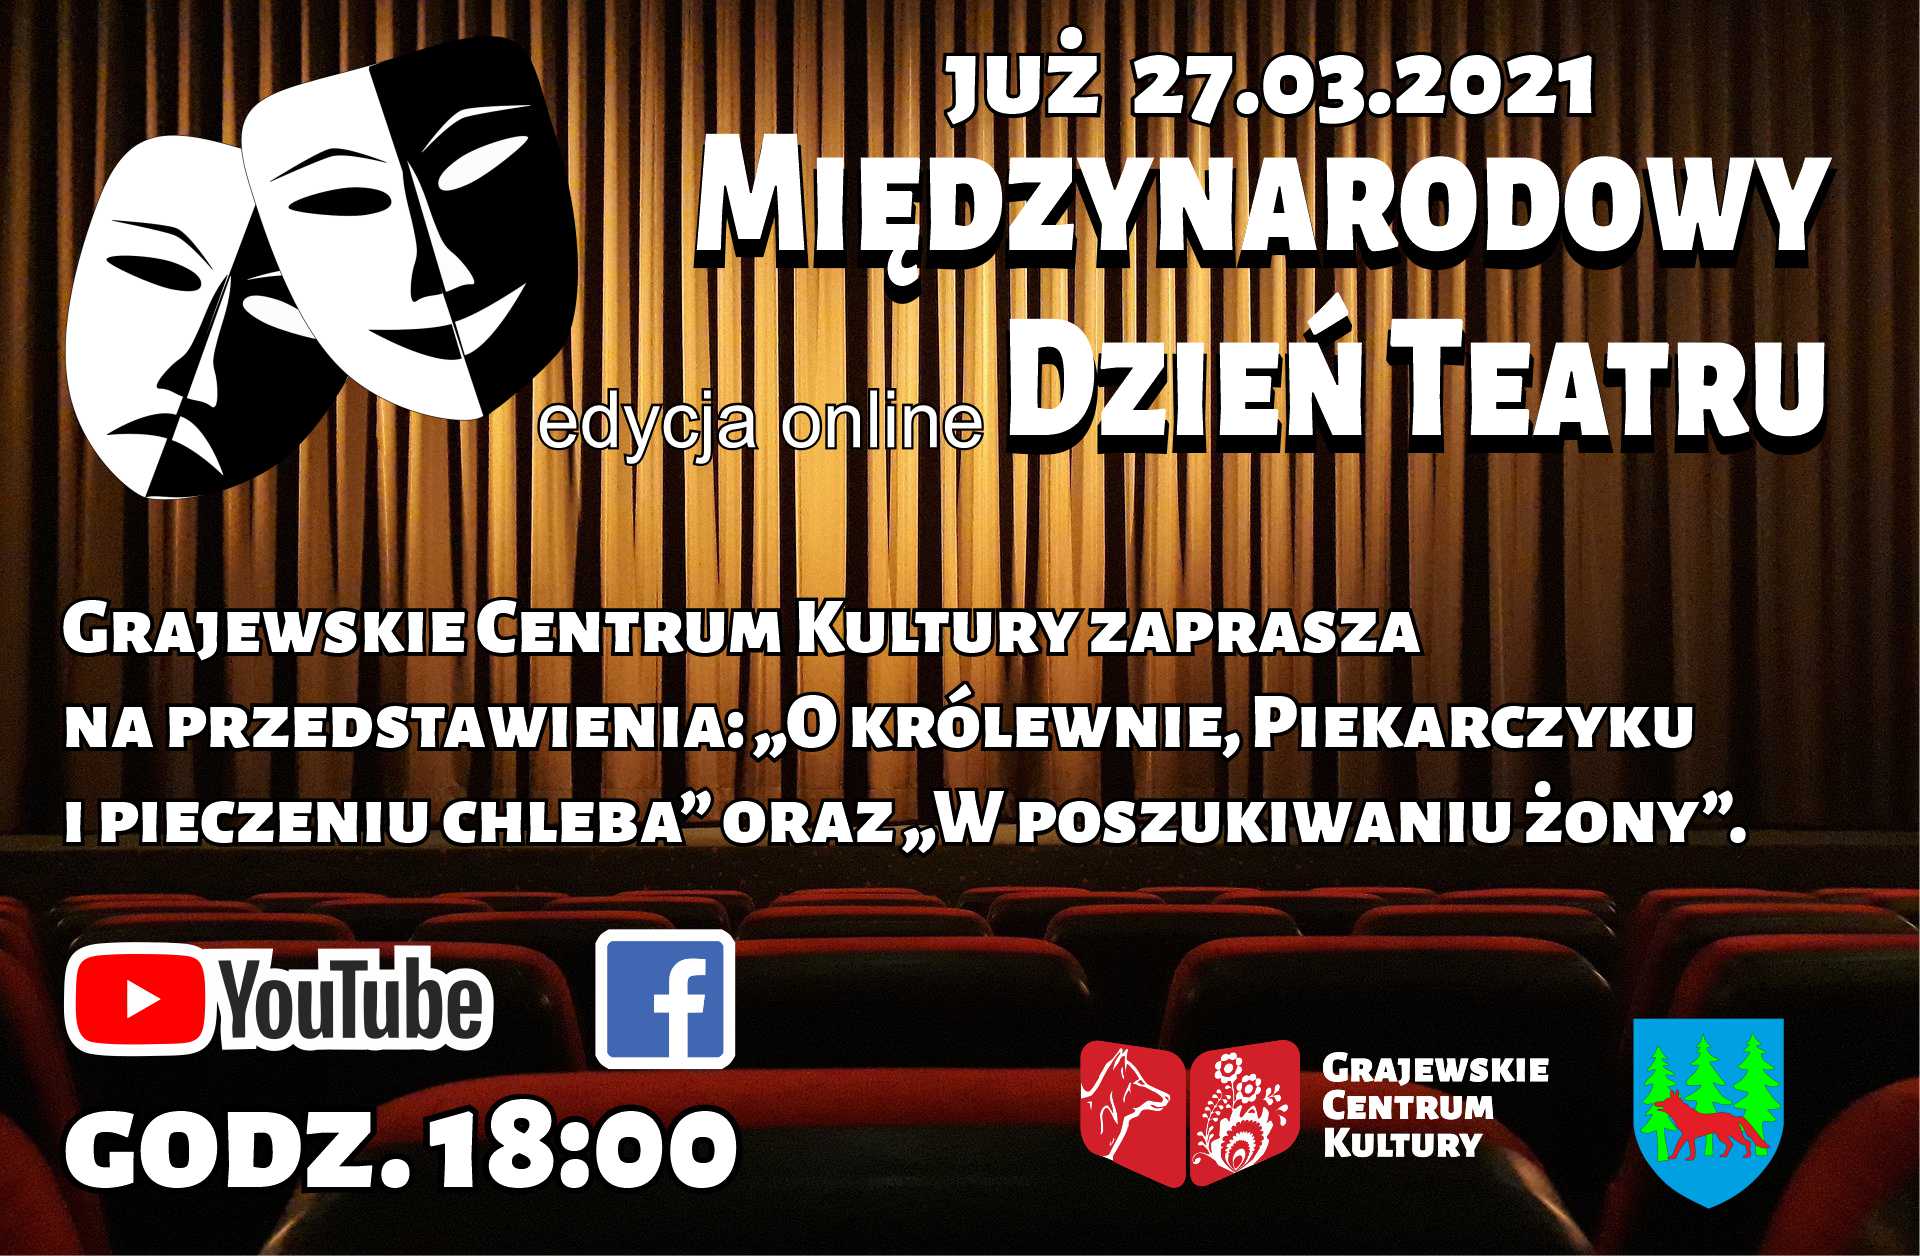 Plakat promujący międzynarodowy dzień teatru